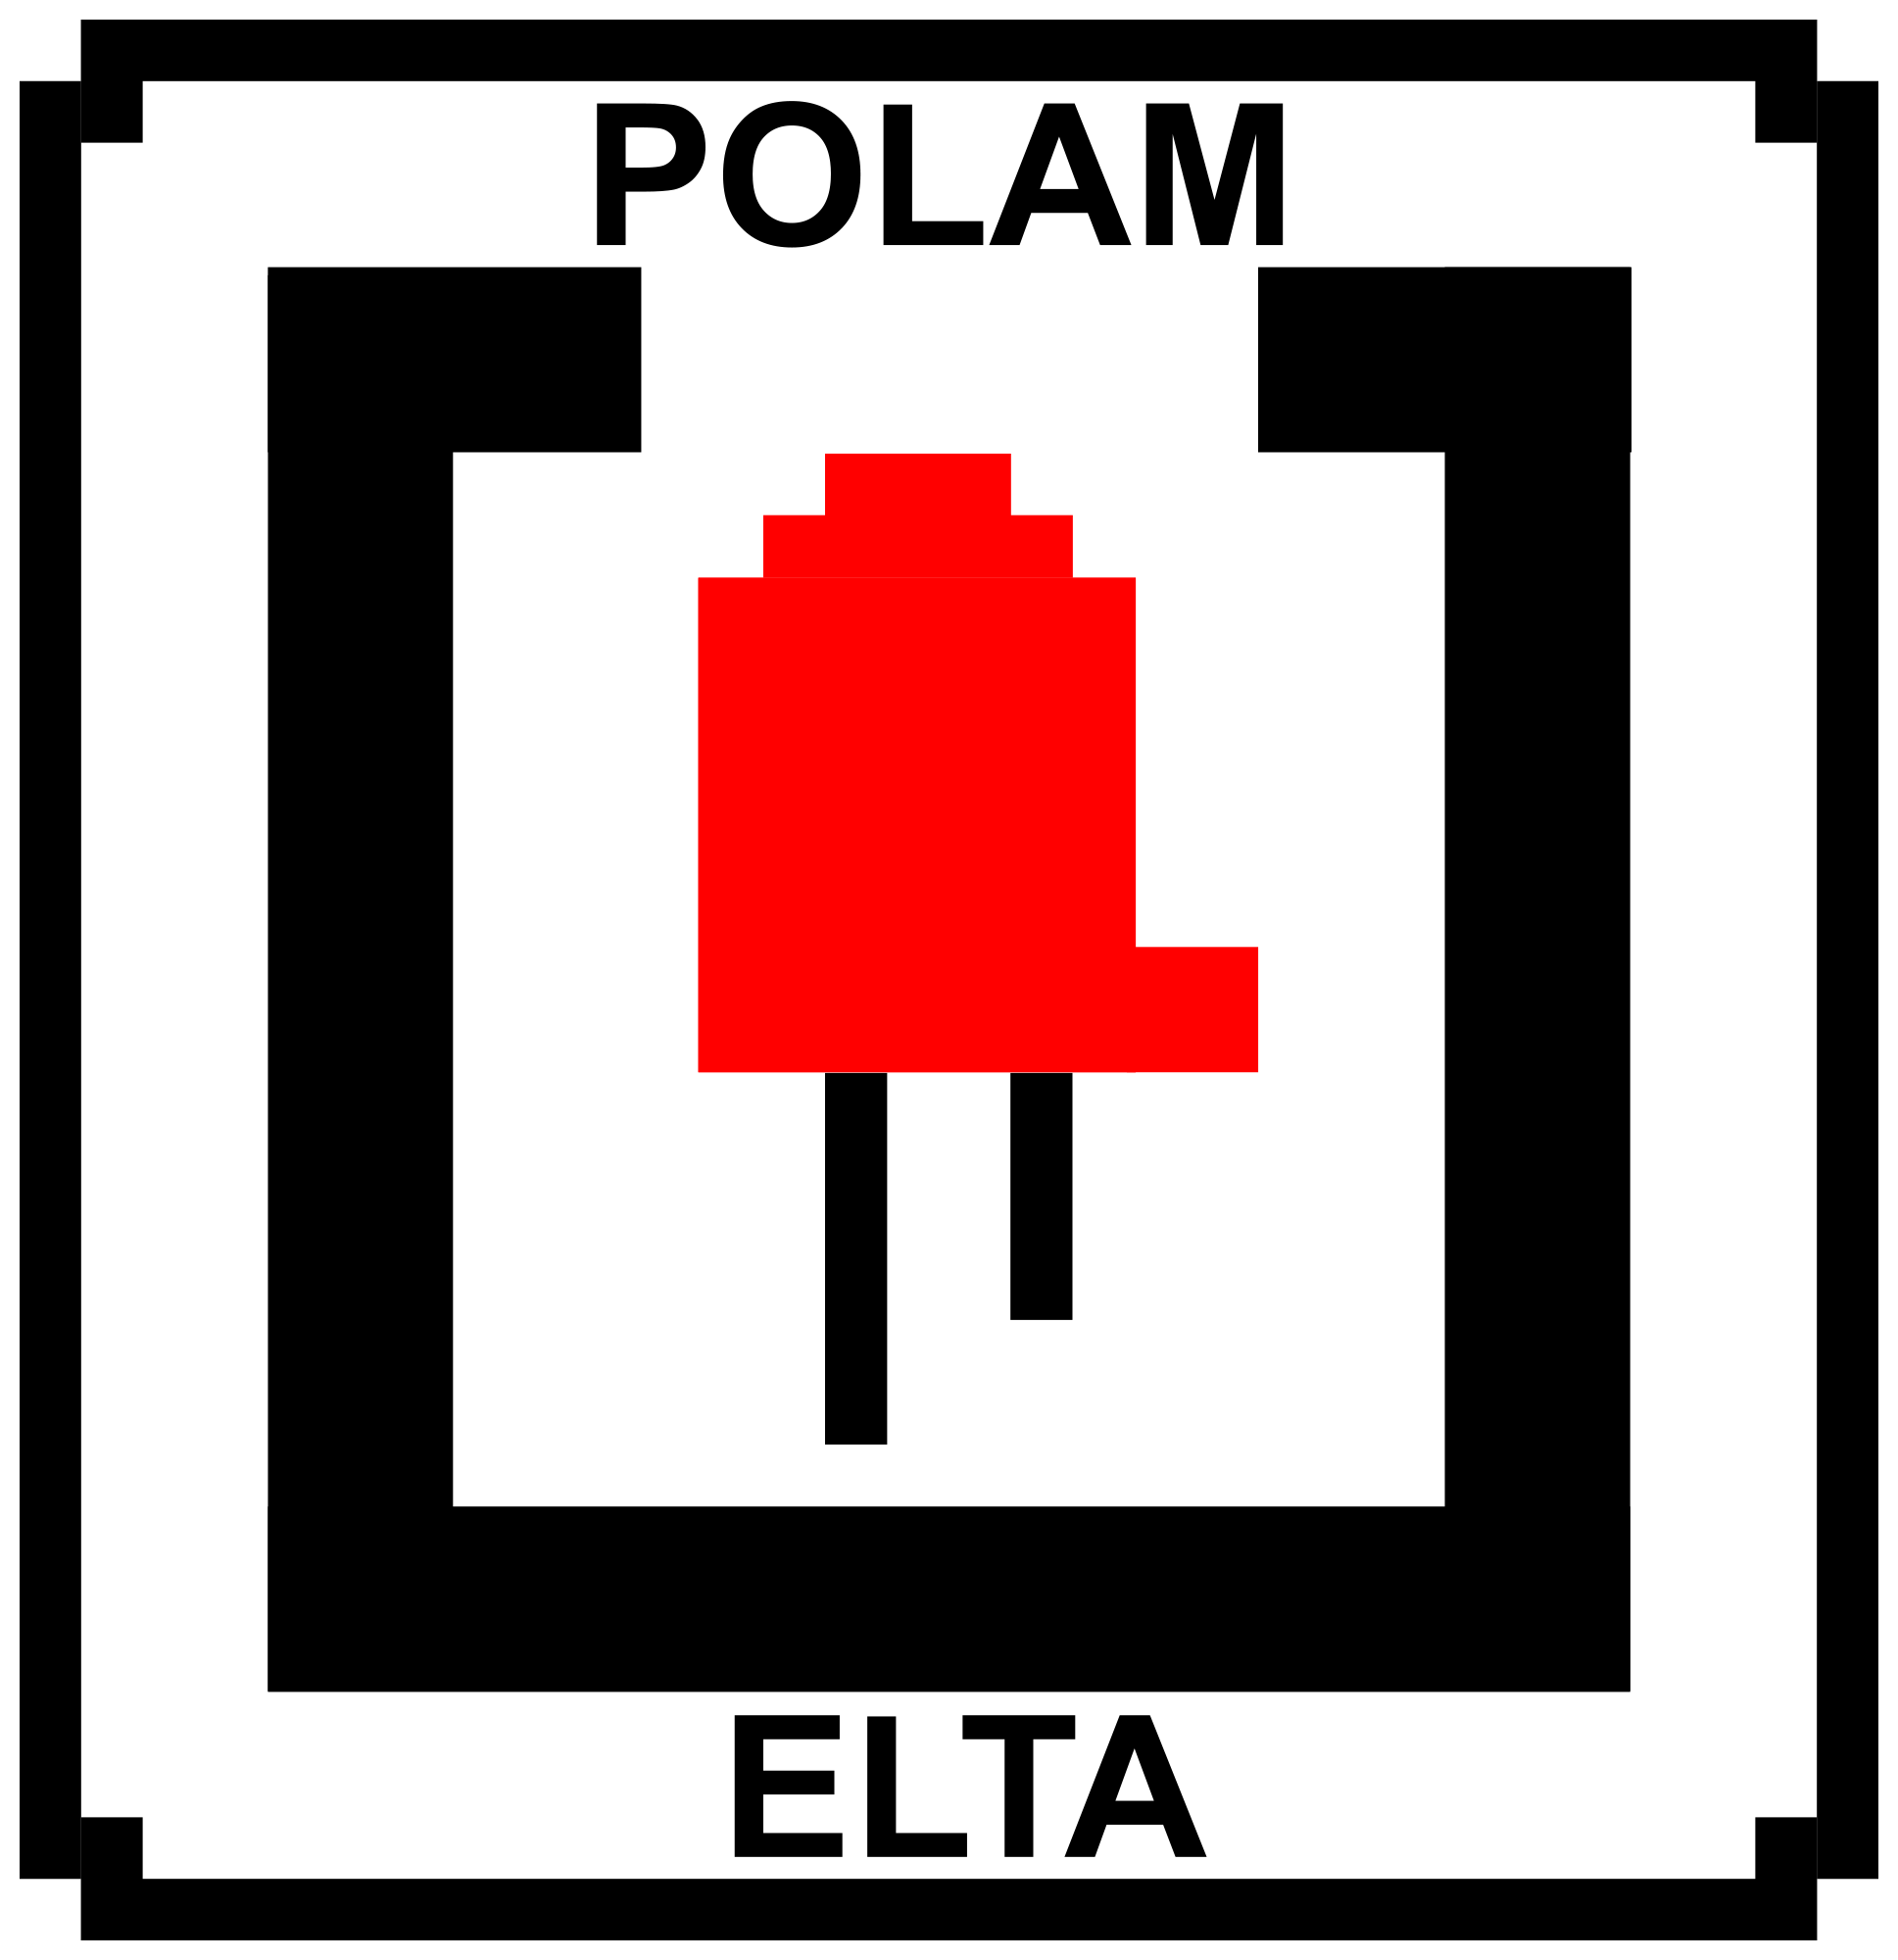 POLAM-ELTA